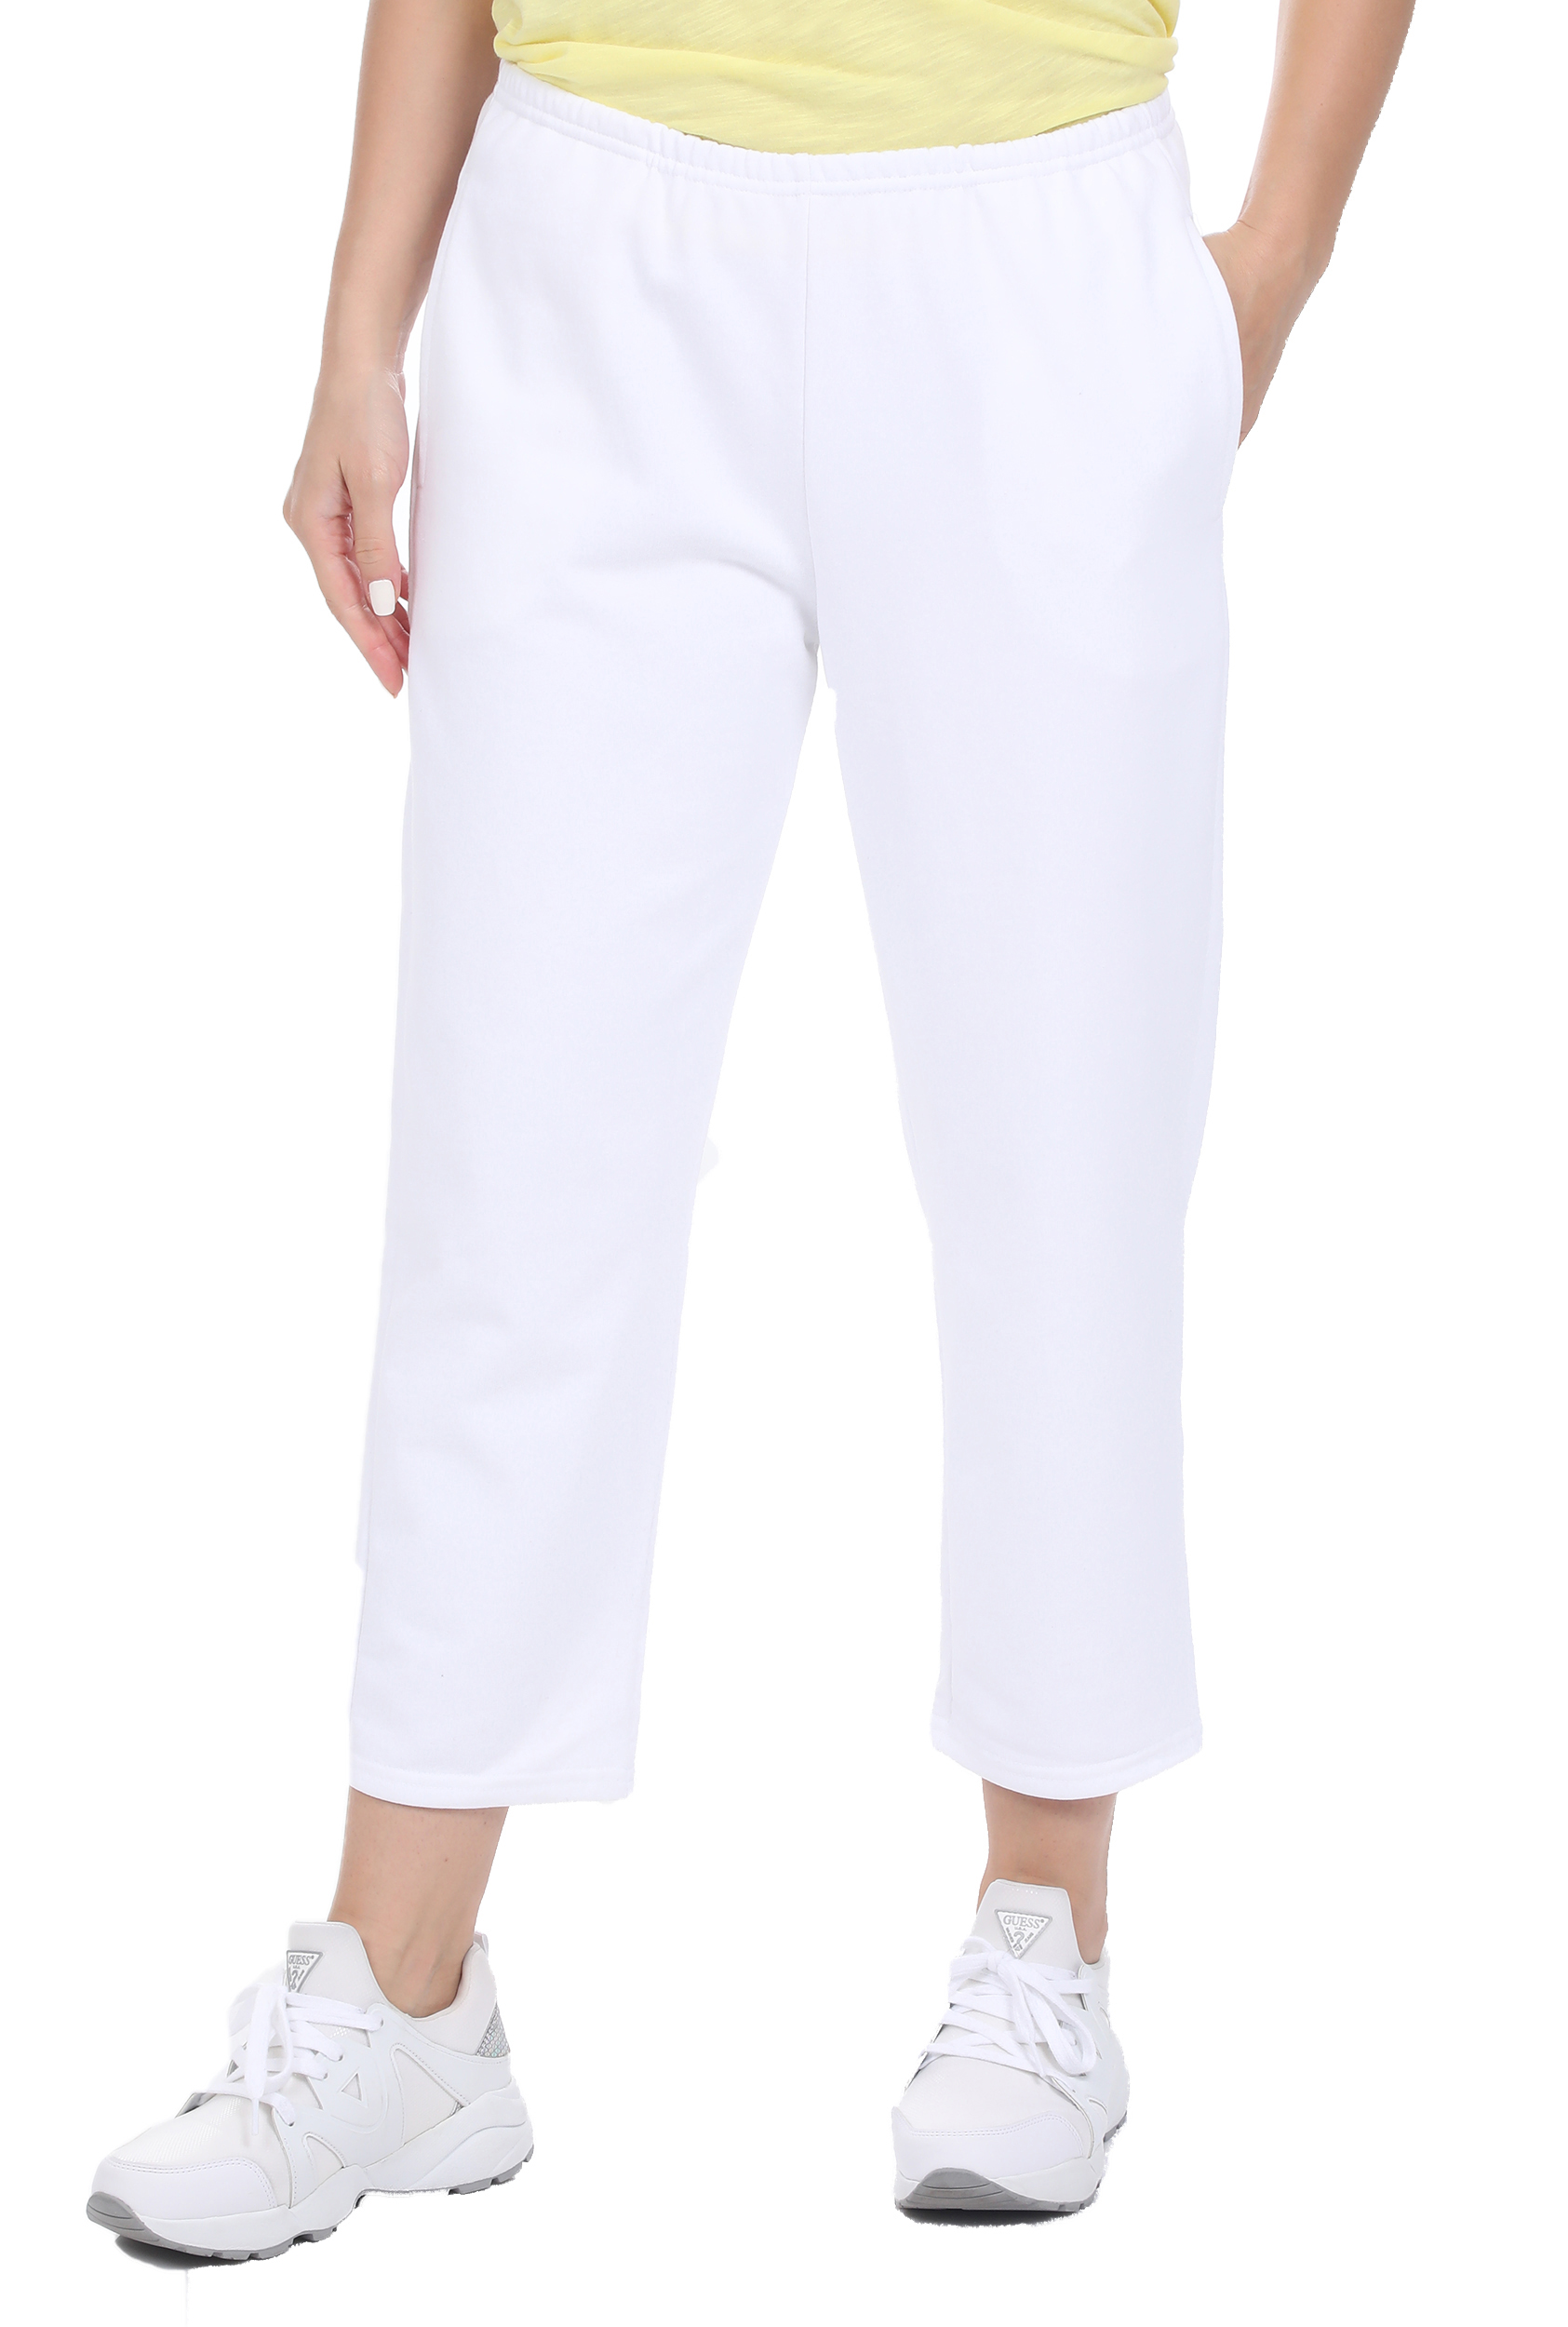 Γυναικεία/Ρούχα/Παντελόνια/Φόρμες AMERICAN VINTAGE - Γυναικείο παντελόνι φόρμας AMERICAN VINTAGE λευκό